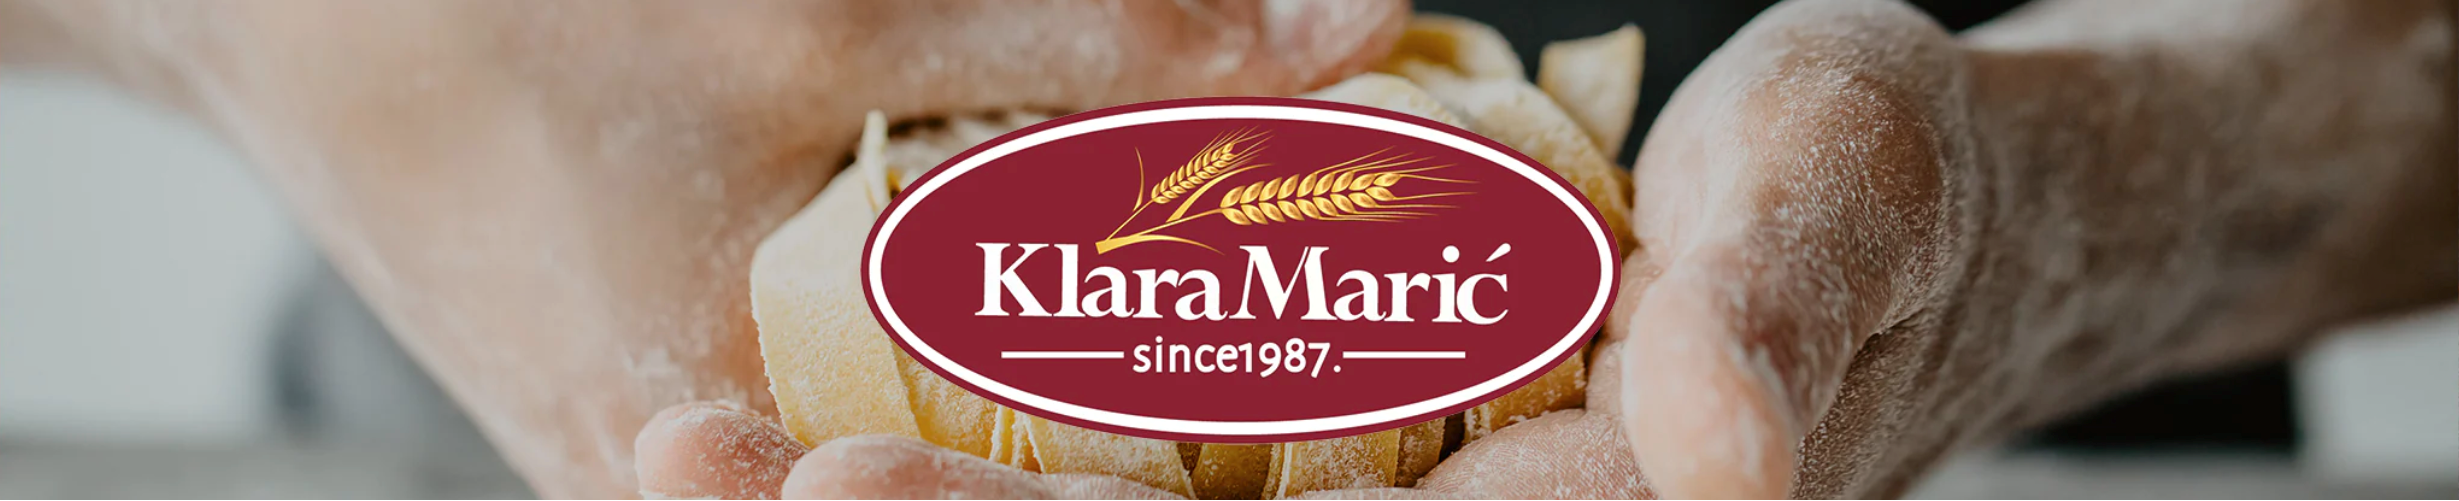 Klara Maric - Global Imports & Exports Wholesale